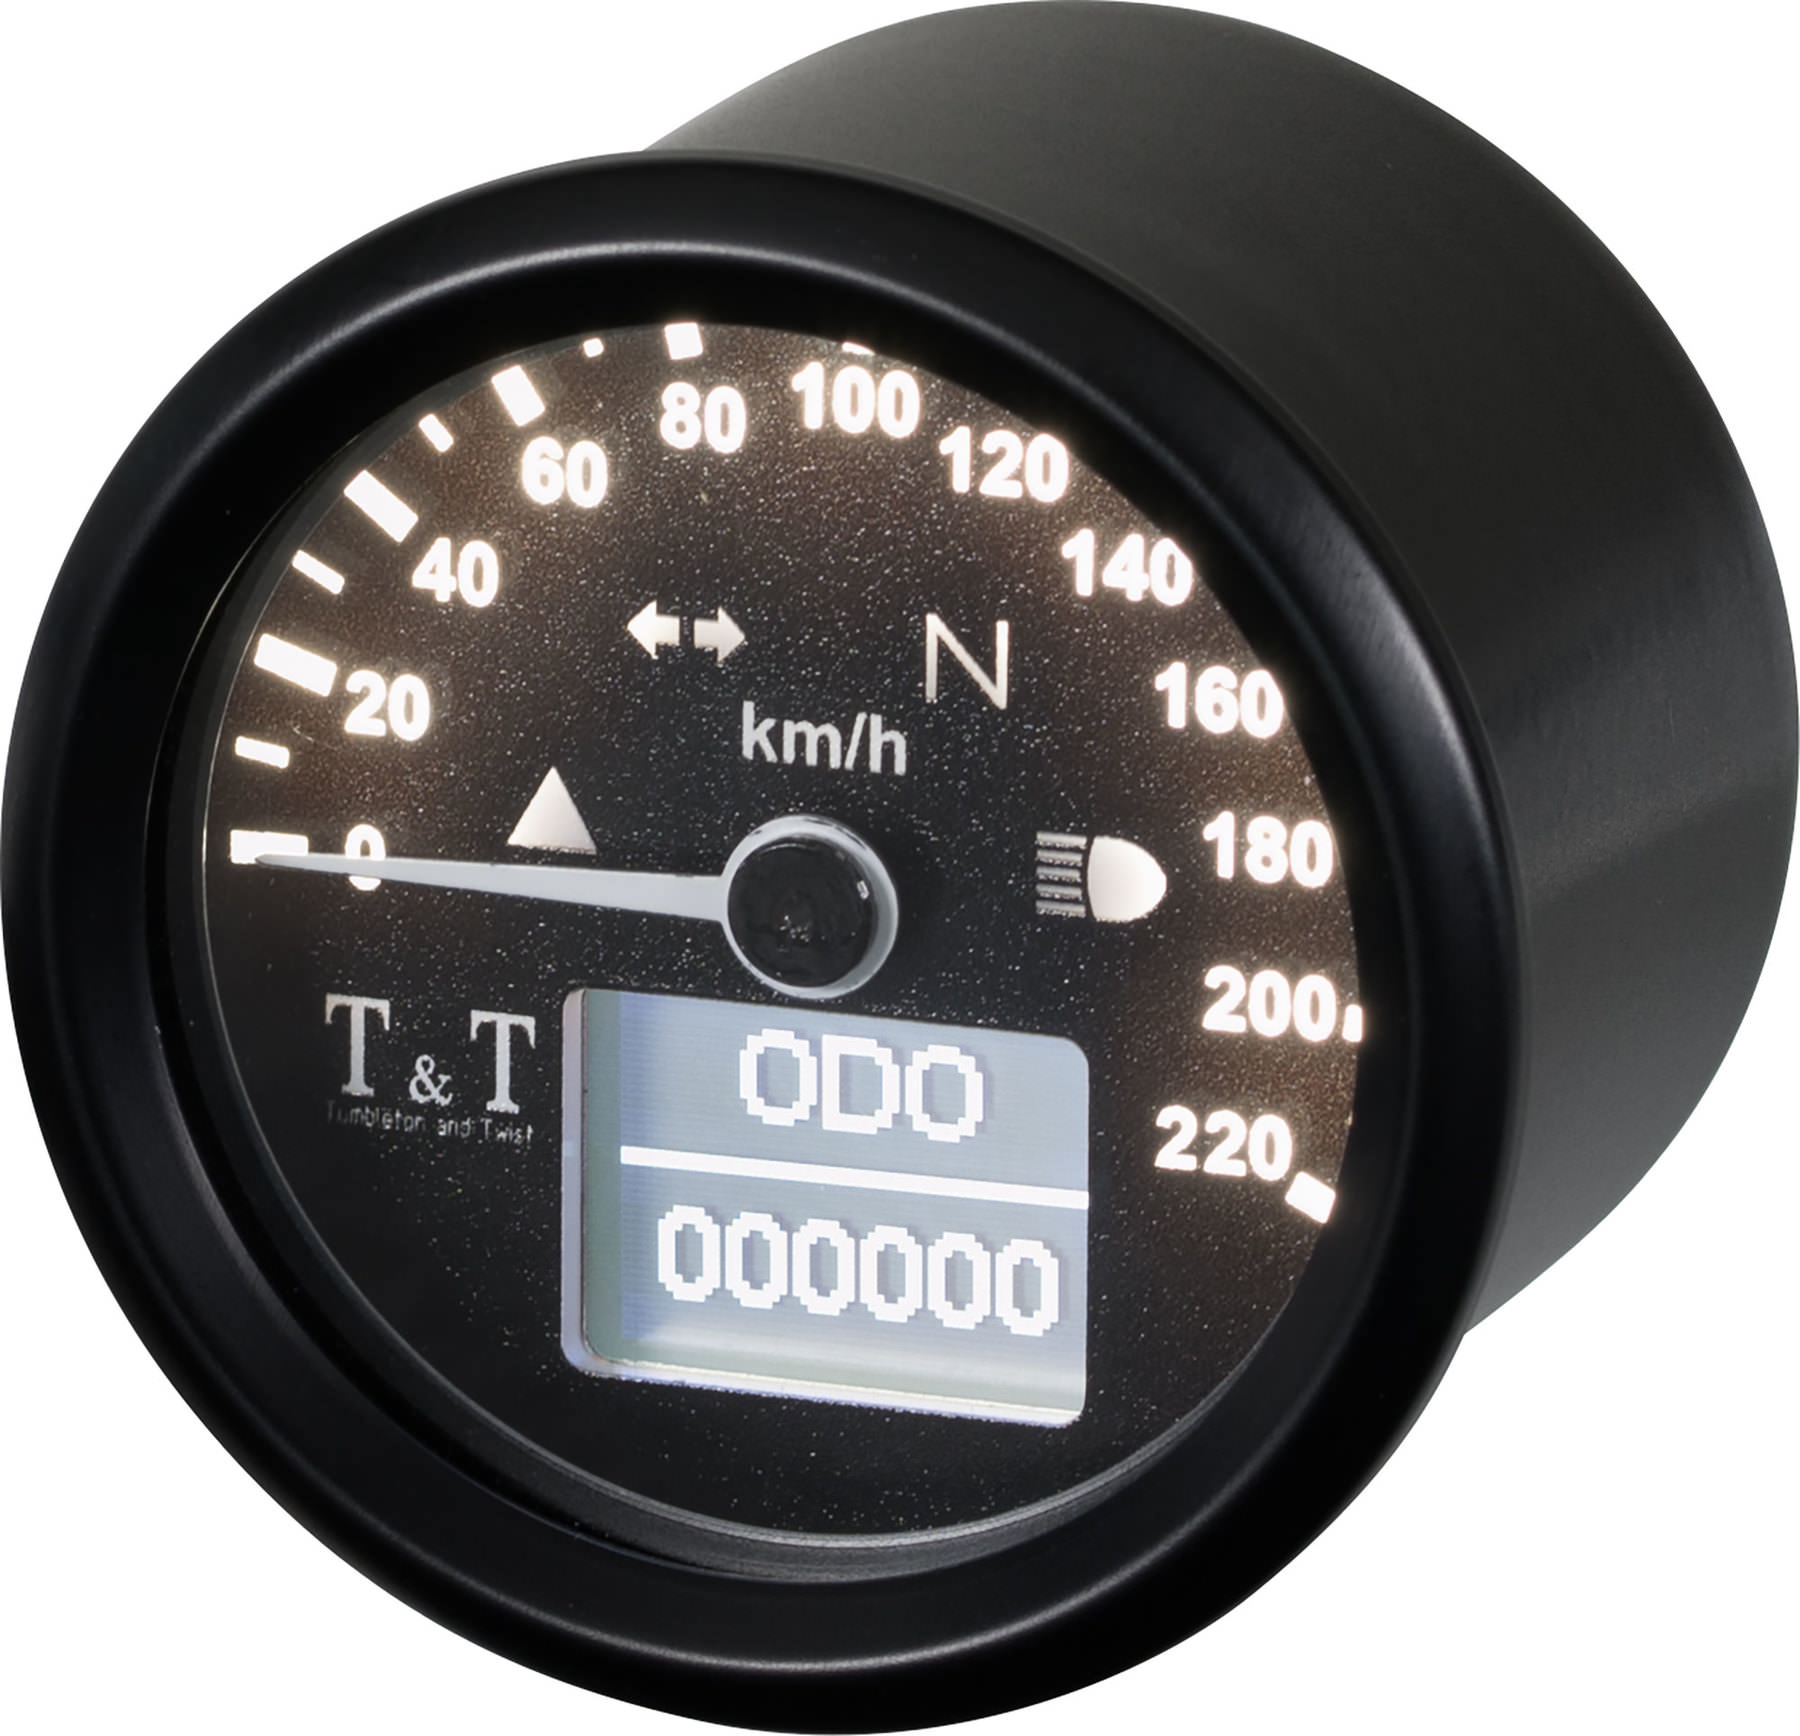 Digital Speedometer-TUMBLETON & Twist 